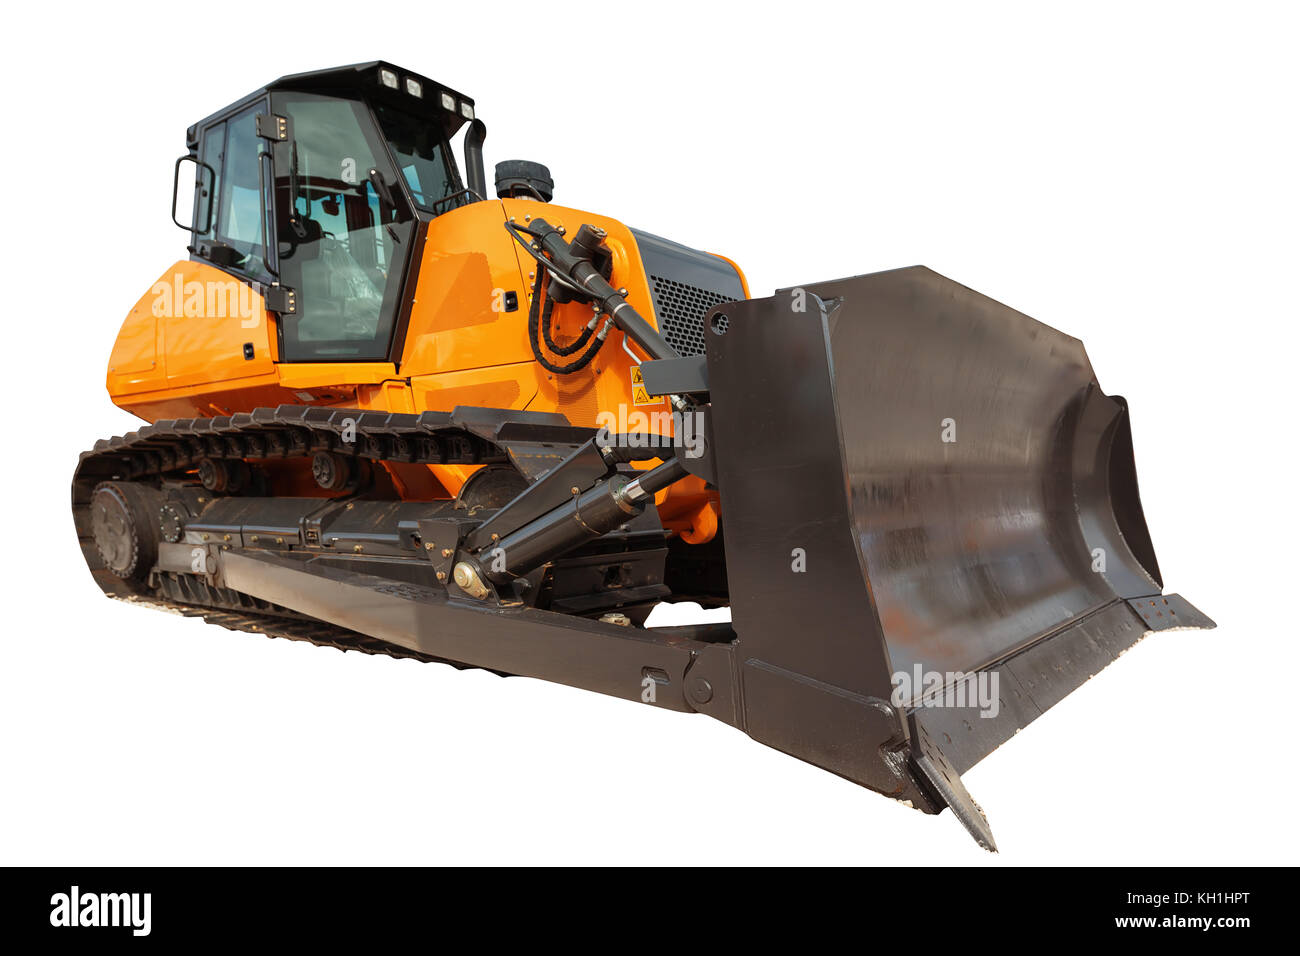 Pelle bulldozer isolé de l'équipement moderne avec clipping path Banque D'Images